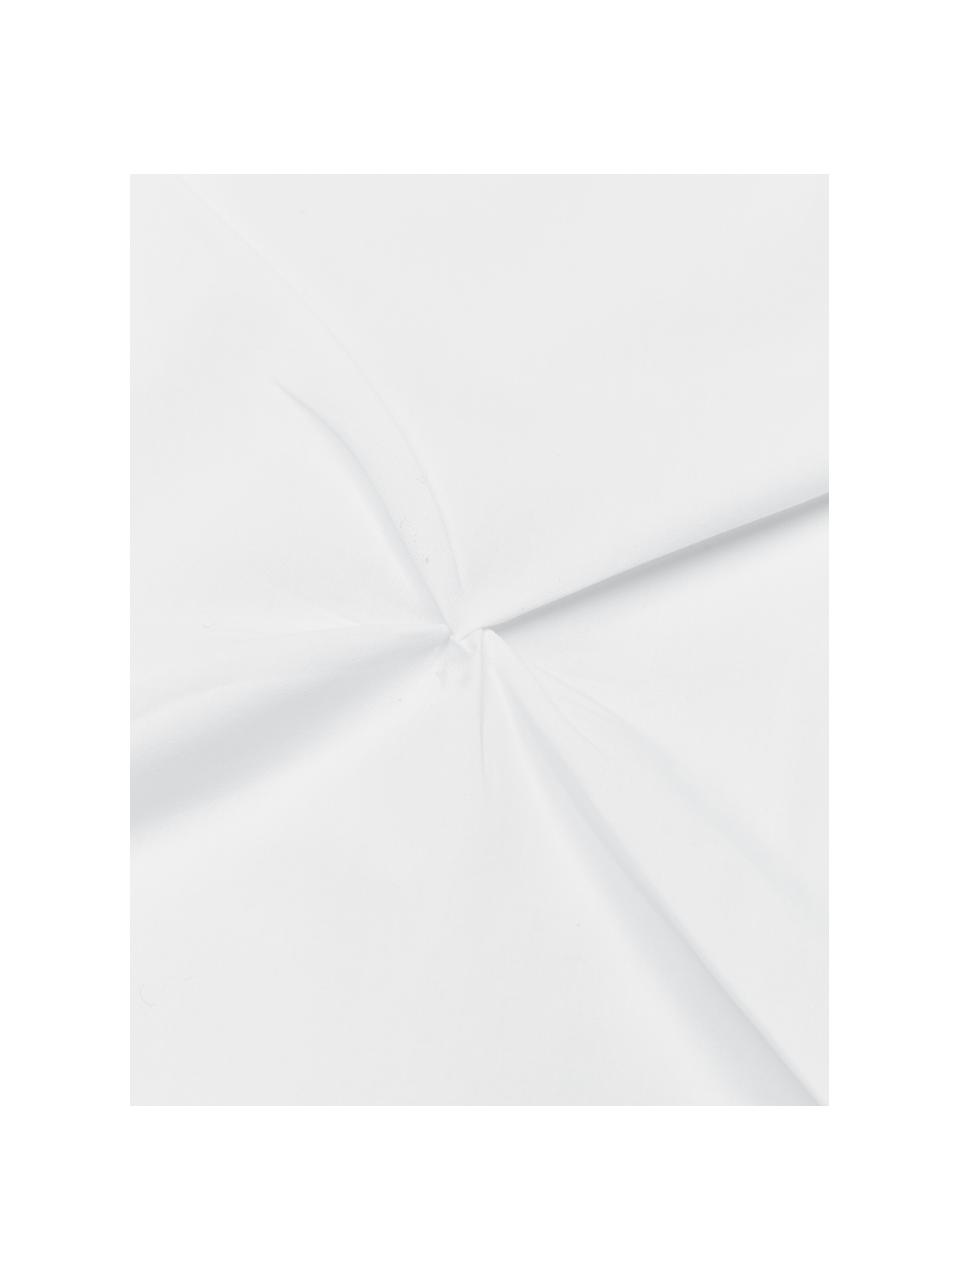 Pościel z perkalu Brody, Biały, 135 x 200 cm + 1 poduszka 80 x 80 cm